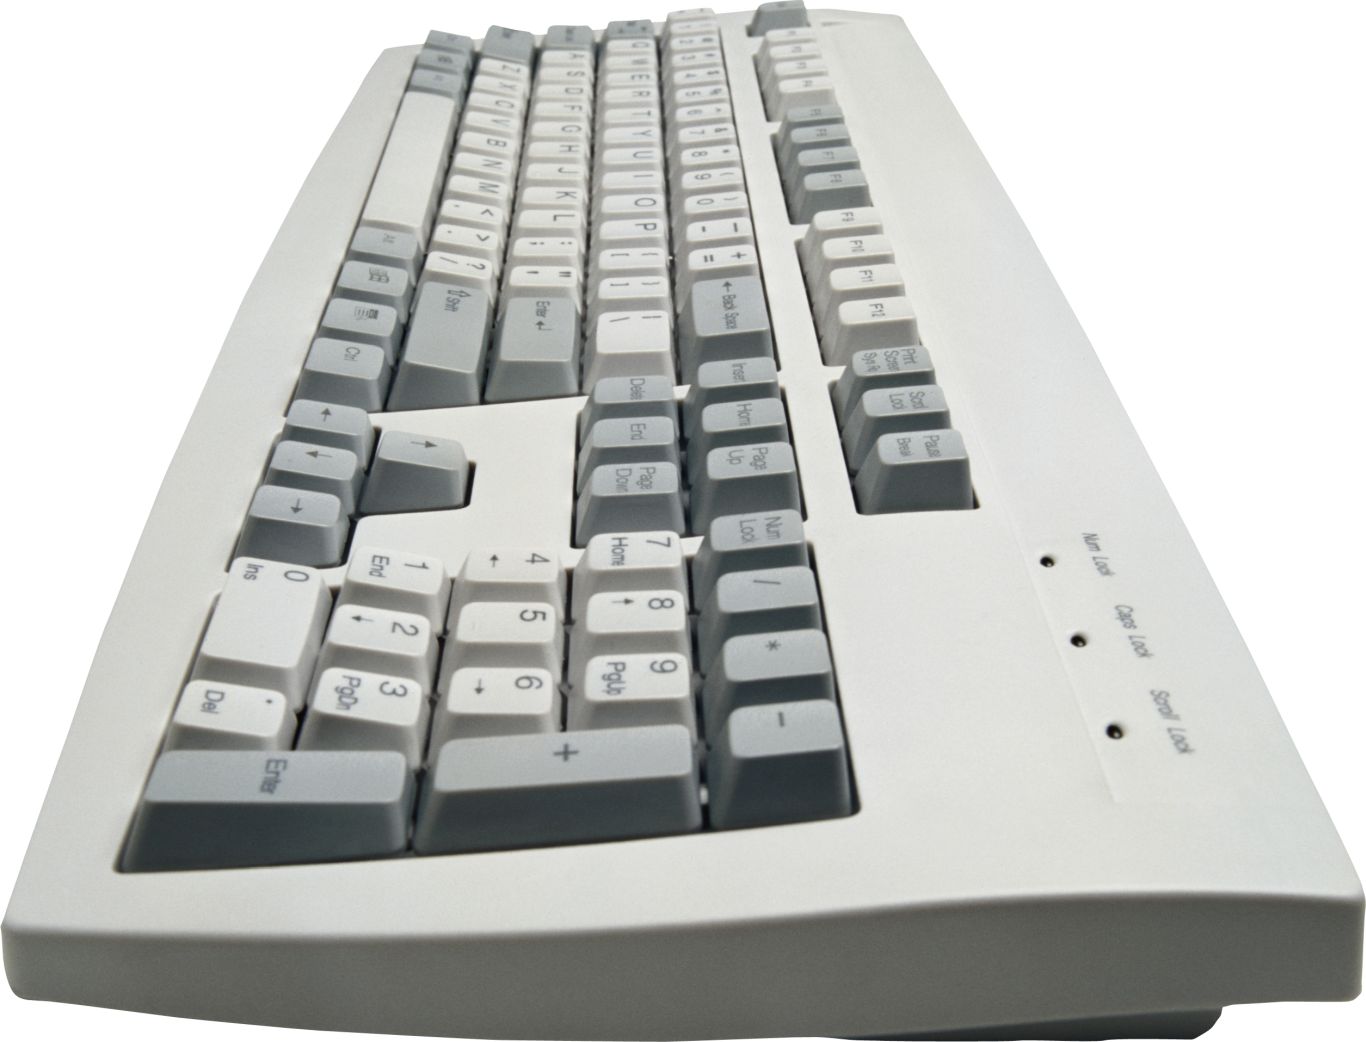 Keyboard PNG image    图片编号:5851